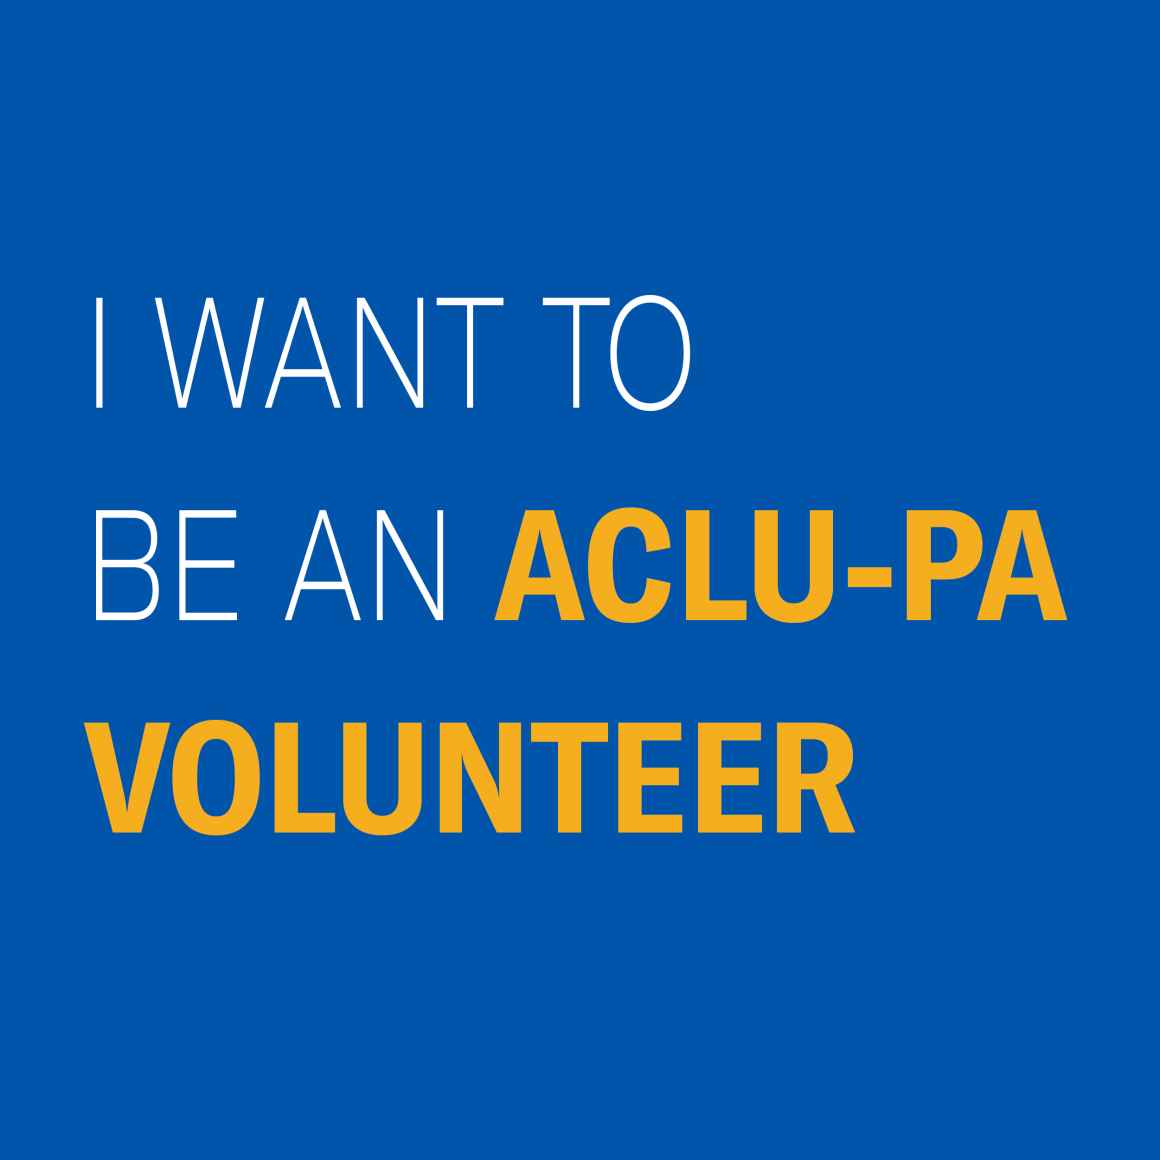 ACLU Volunteer